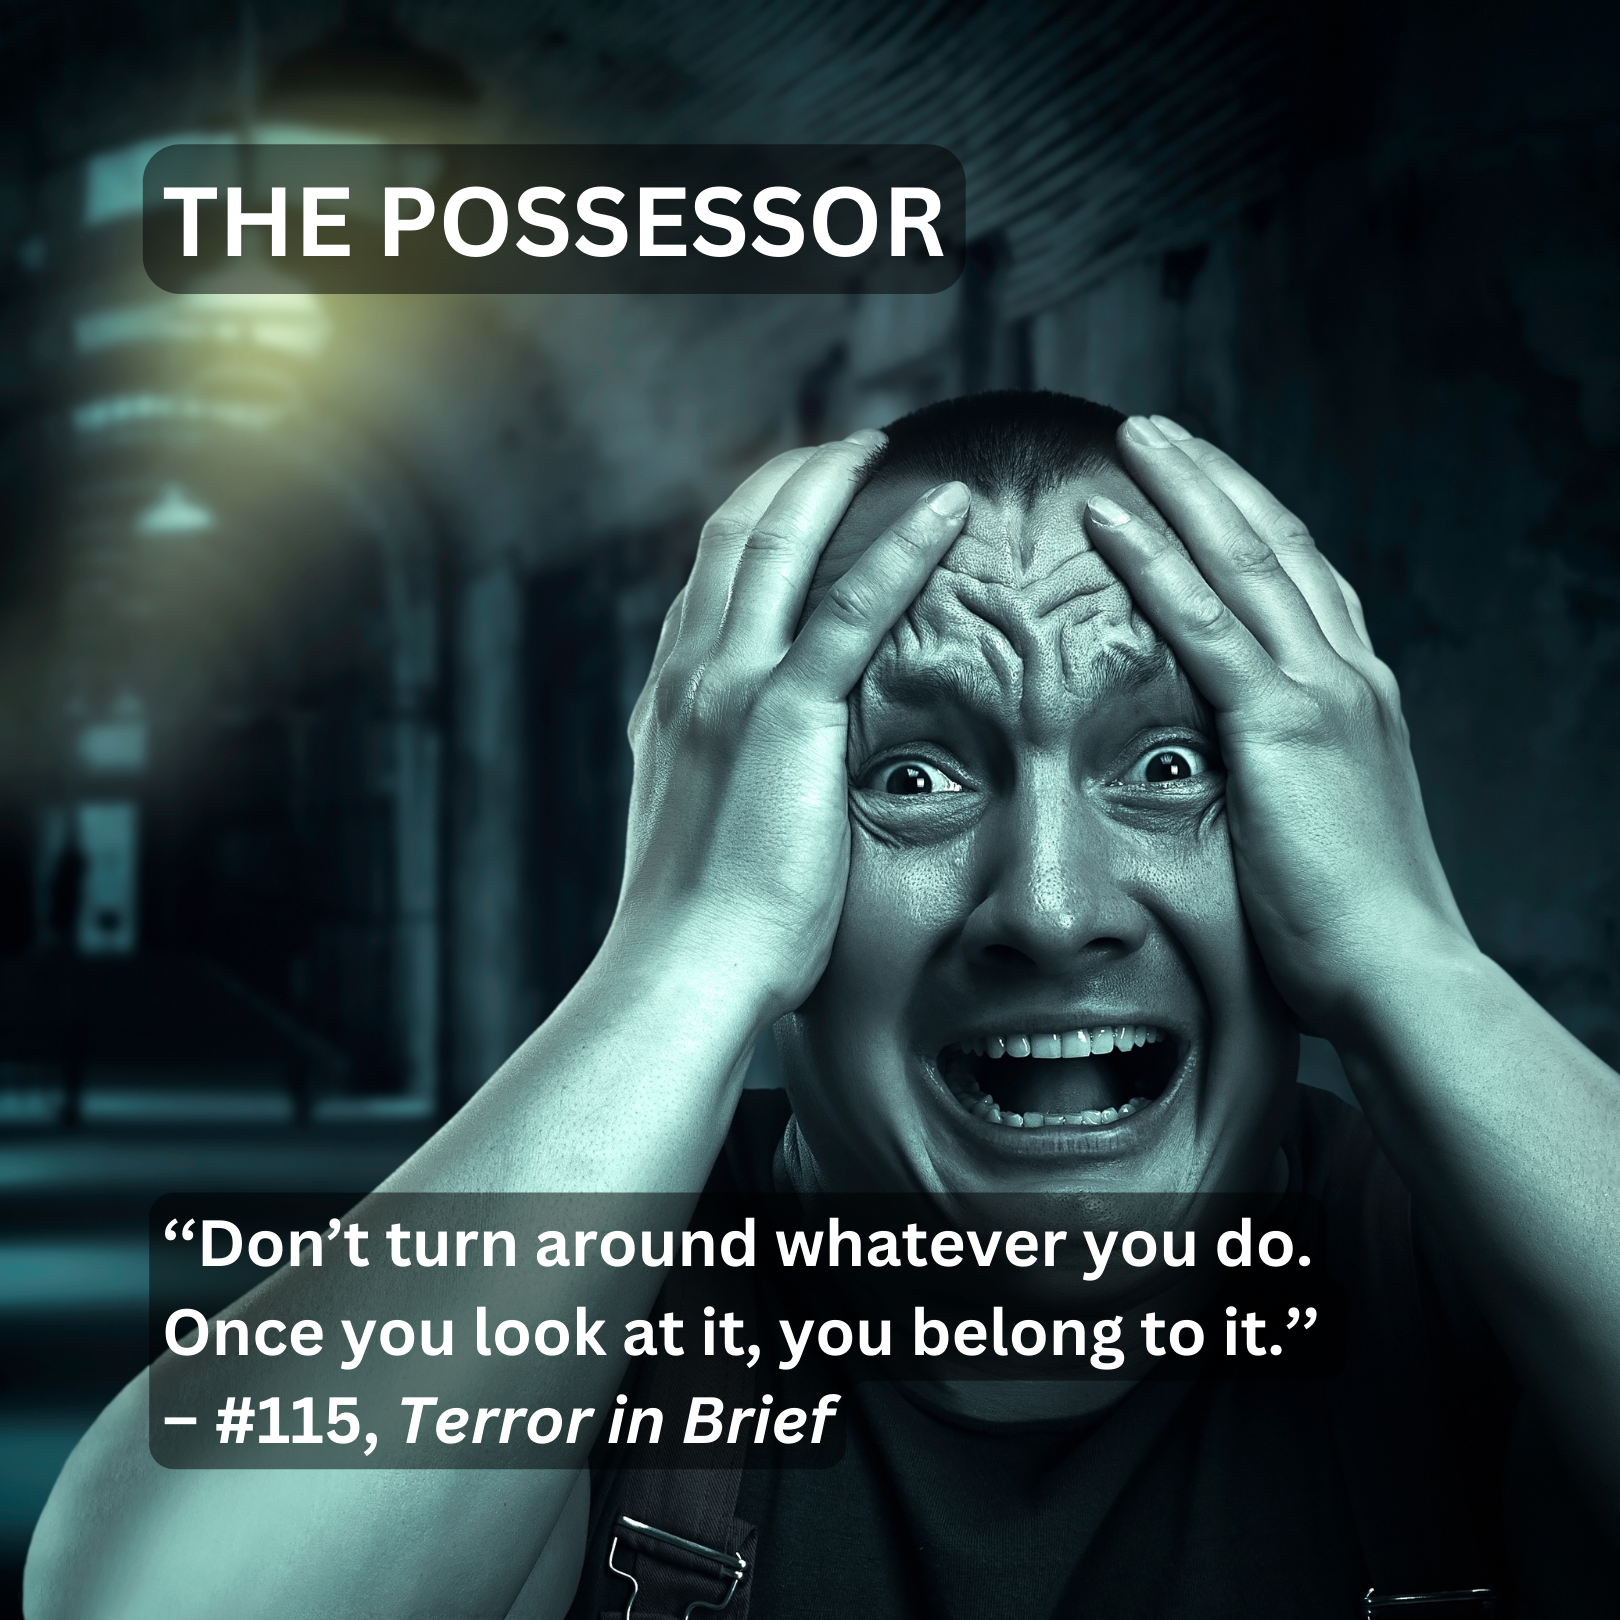 The Possessor from Terror in Brief